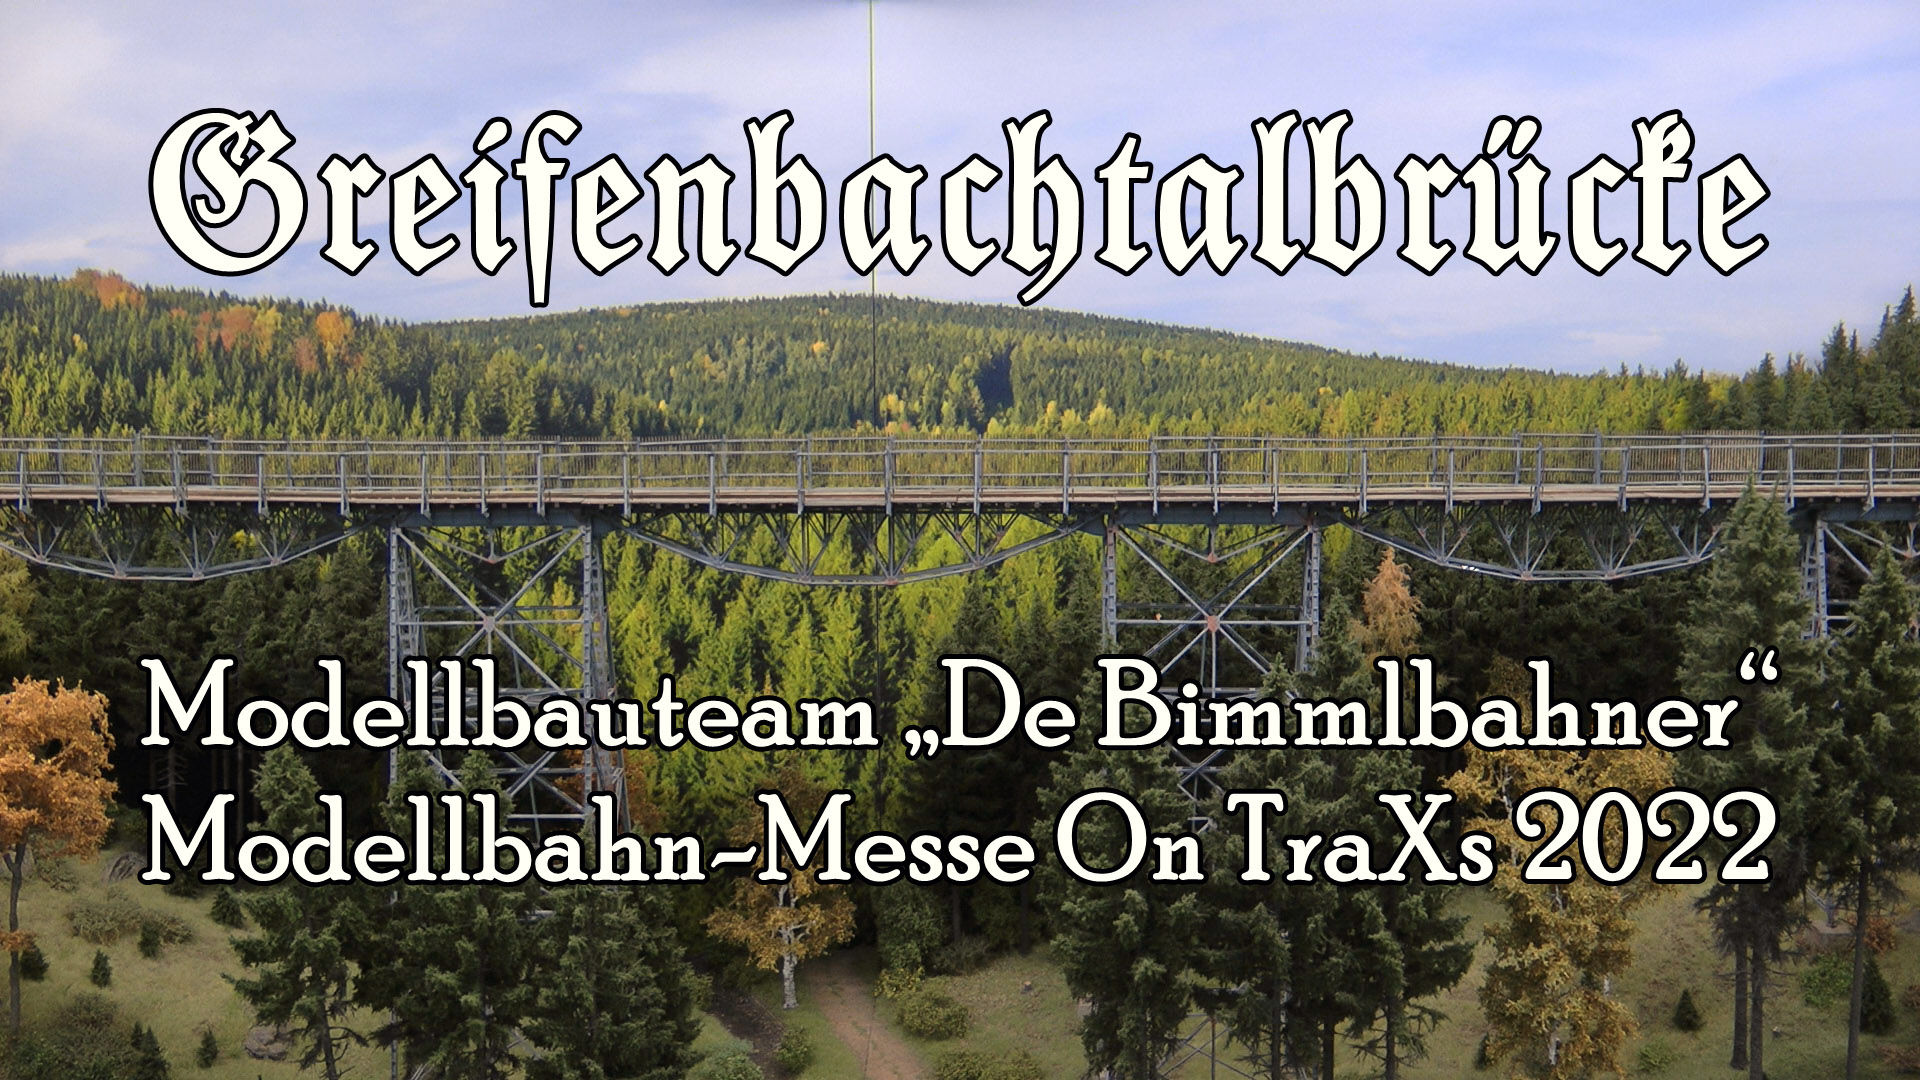 Modellbau in Perfektion! DDR Modellbahn Greifenbachtalbrücke der sächsischen Schmalspurbahnen